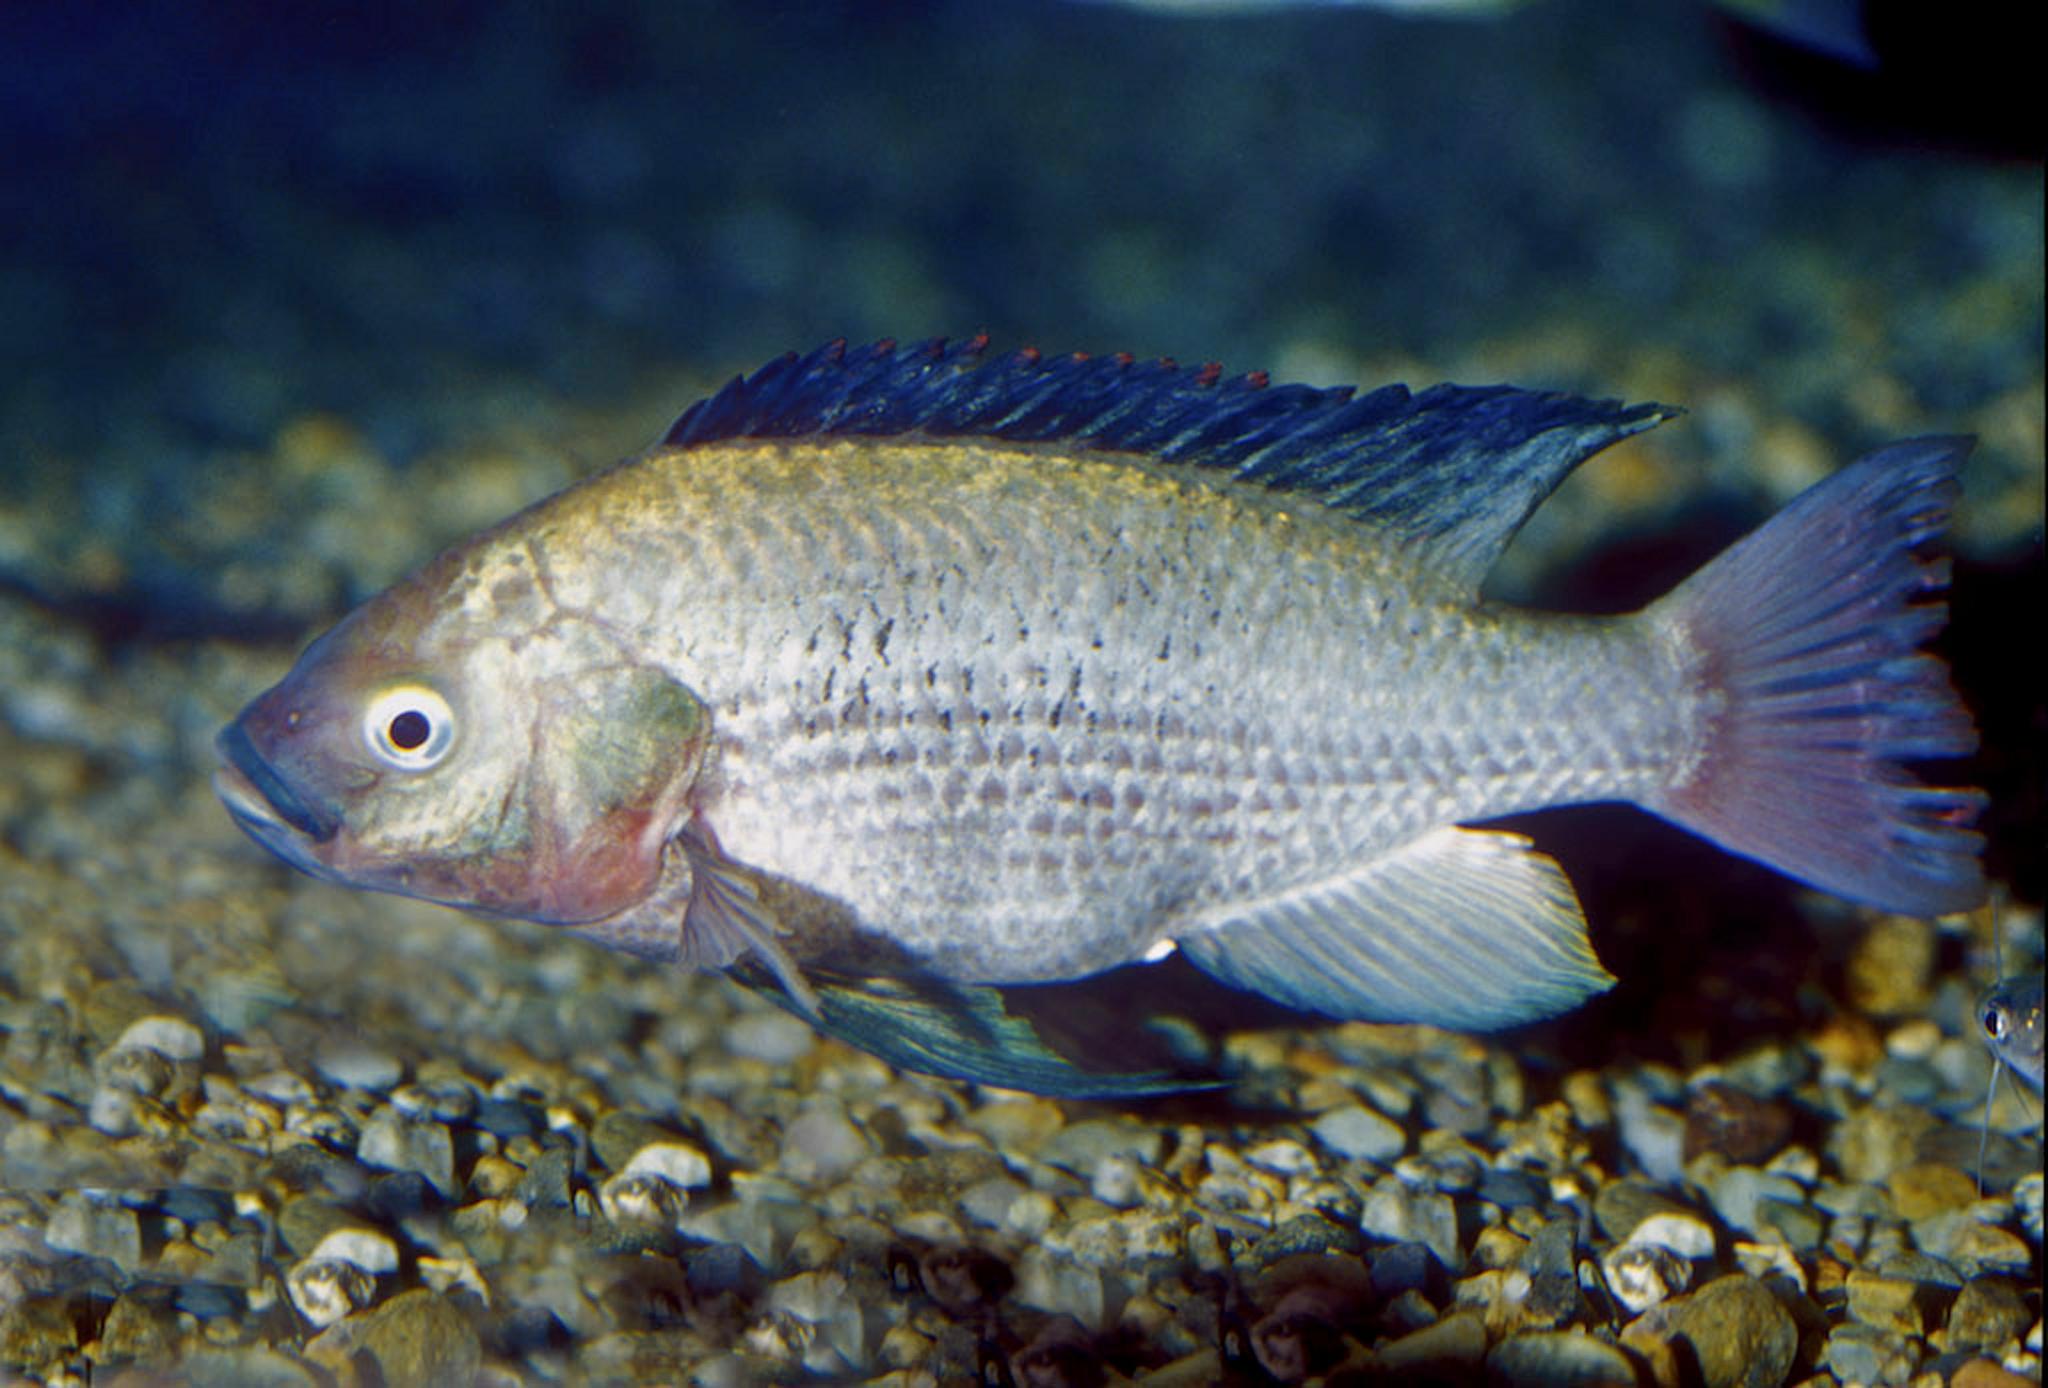 Сом рыба польза и вред рецепты приготовления с фото